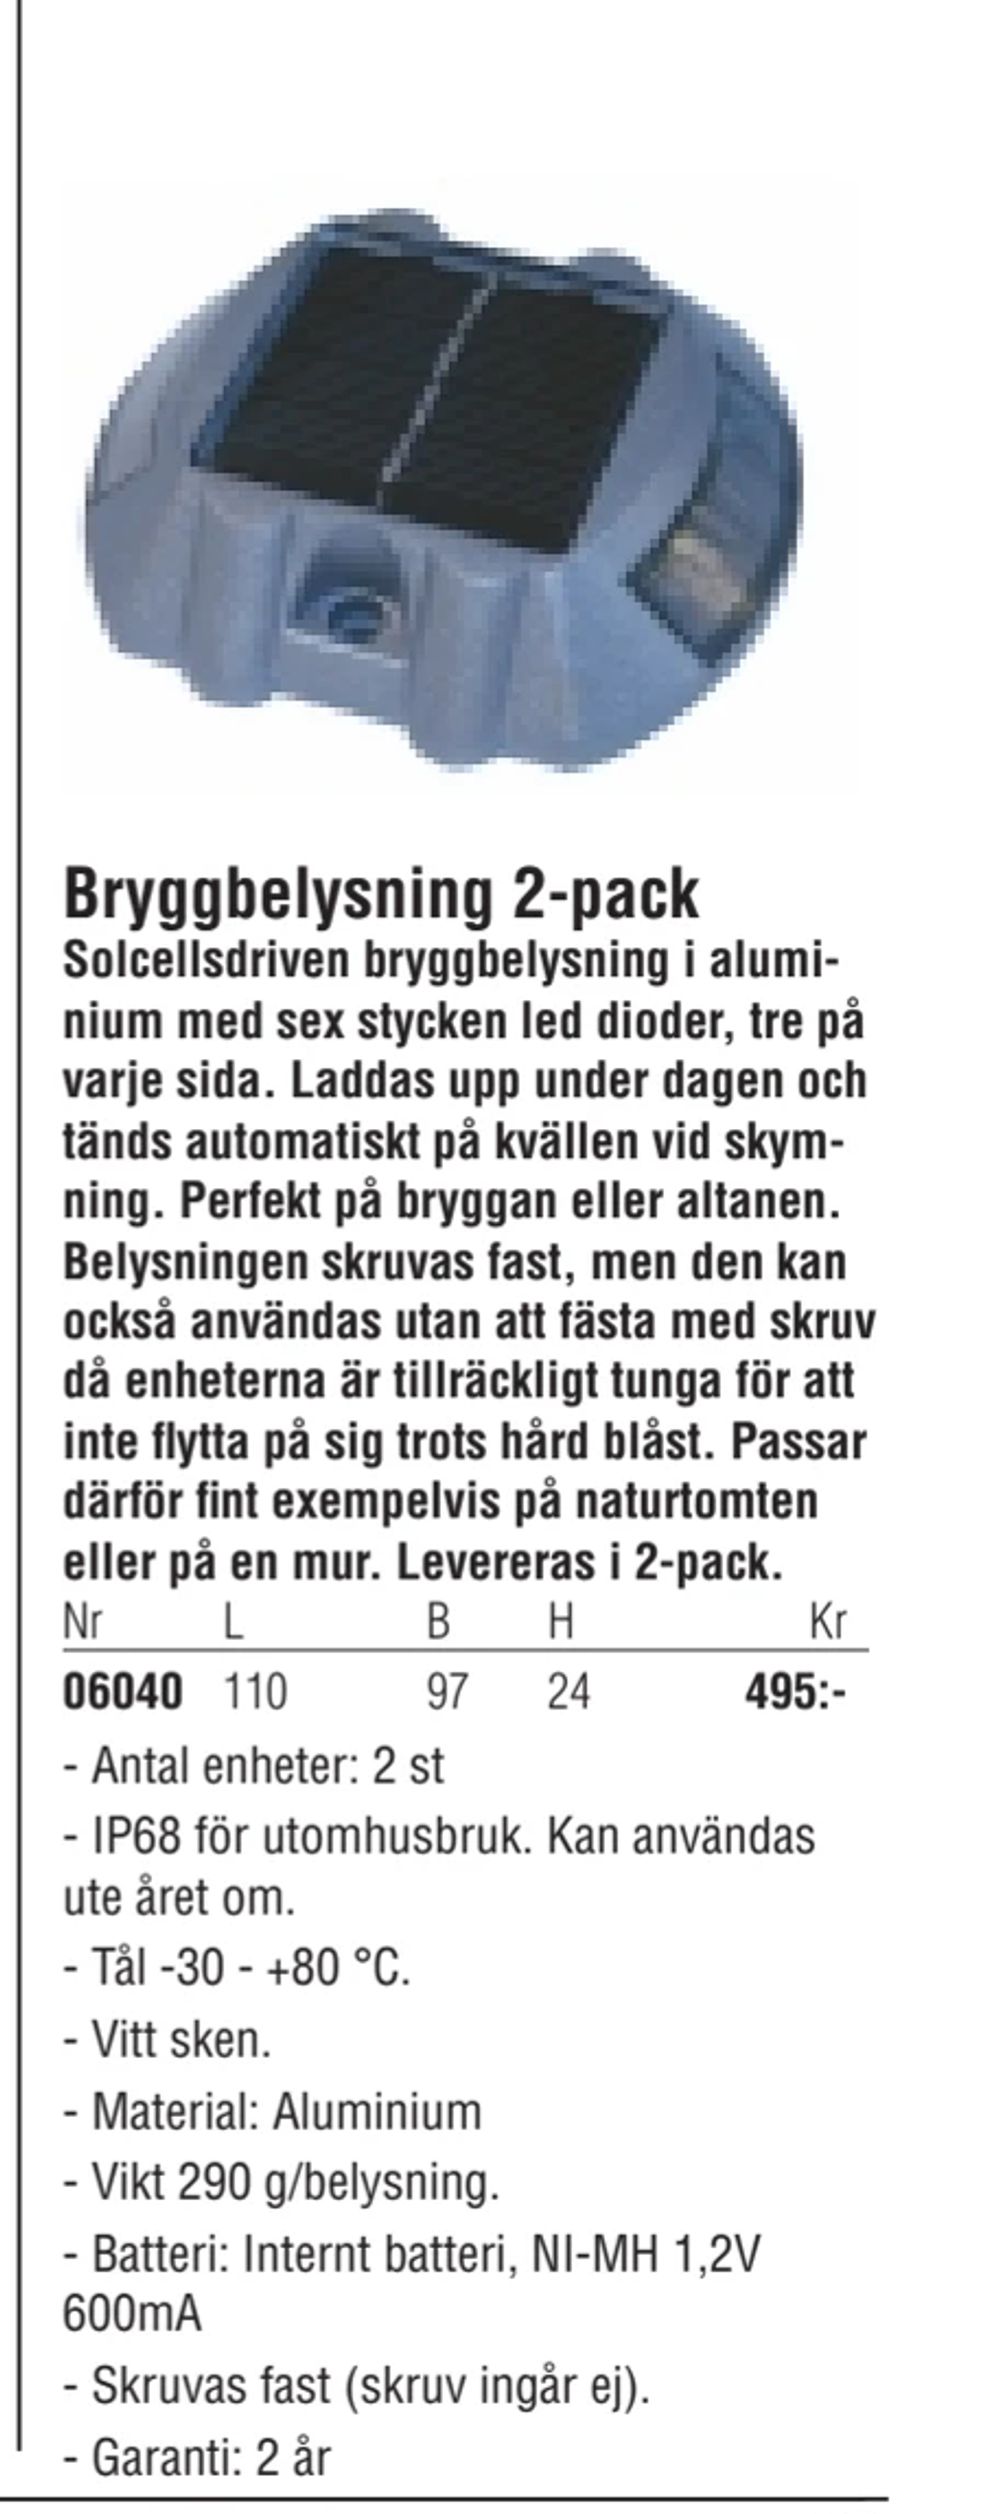 Erbjudanden på Bryggbelysning 2-pack från Erlandsons Brygga för 495 kr